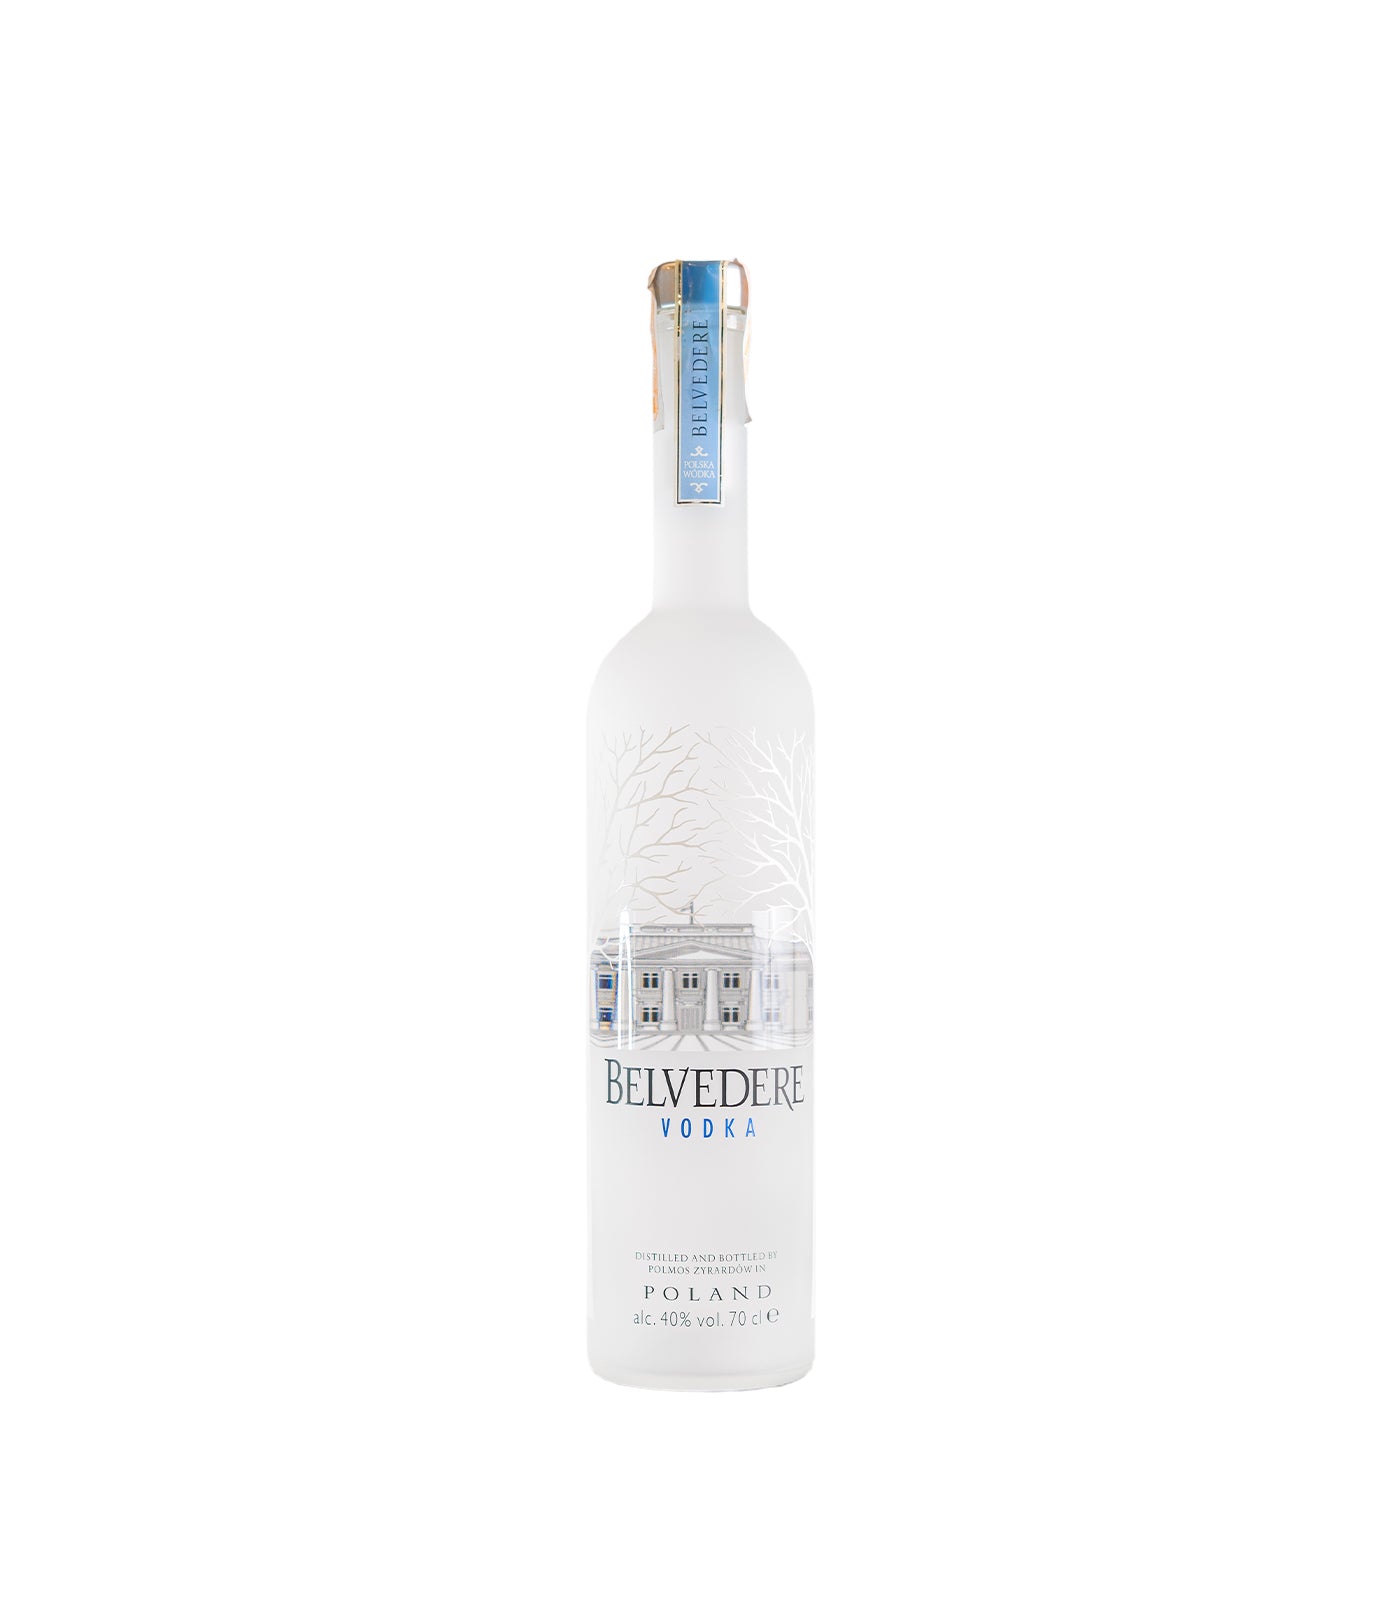 Liquor Lib – Vodka Belvedere Philippines 700ml Pure